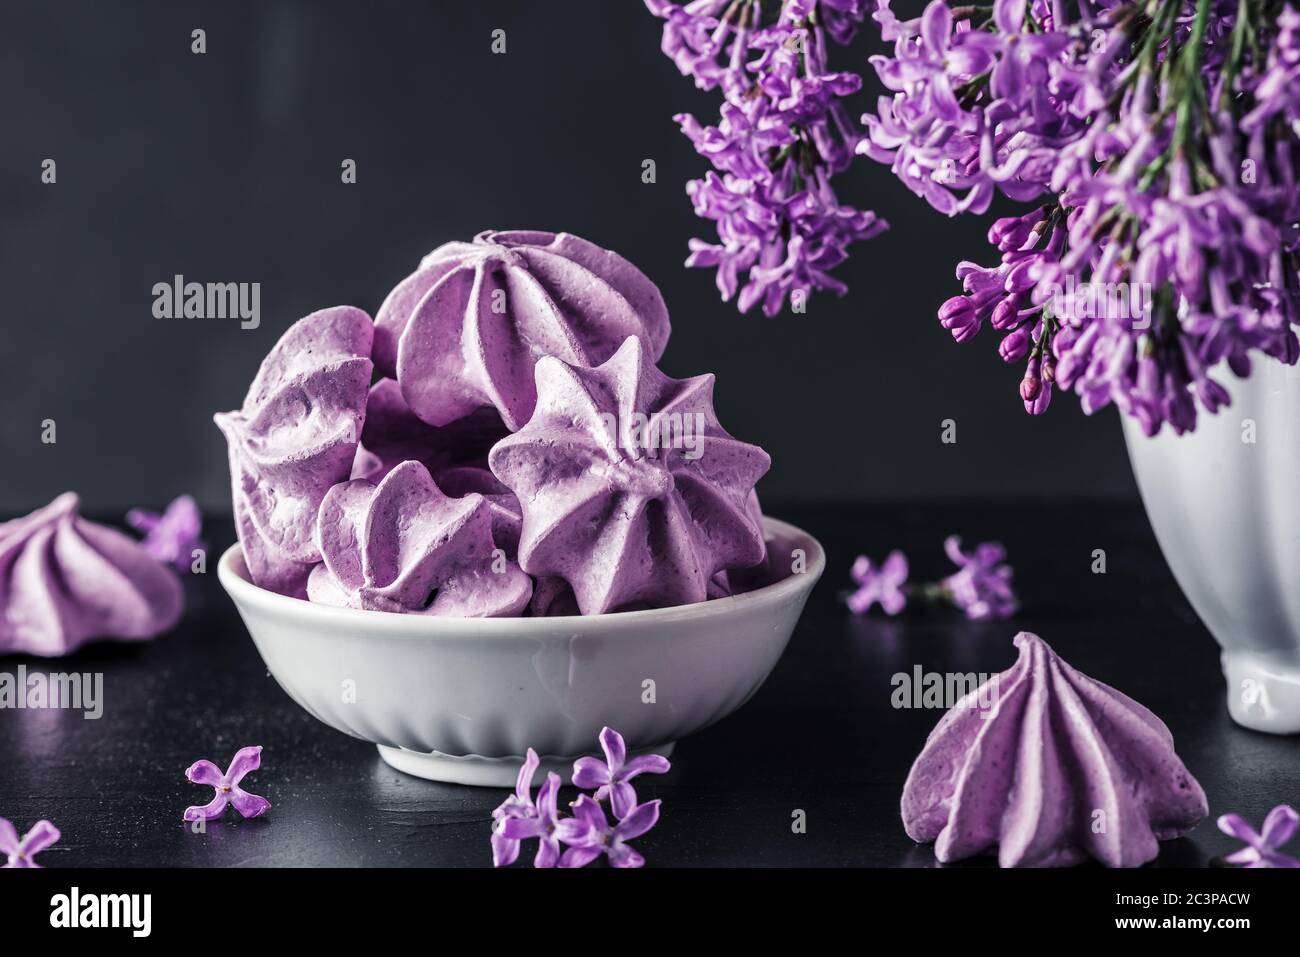 Biscuits meringue violets avec fleurs lilas dans un vase sur fond sombre. Touche basse. Vie fixe. Photo artistique Banque D'Images